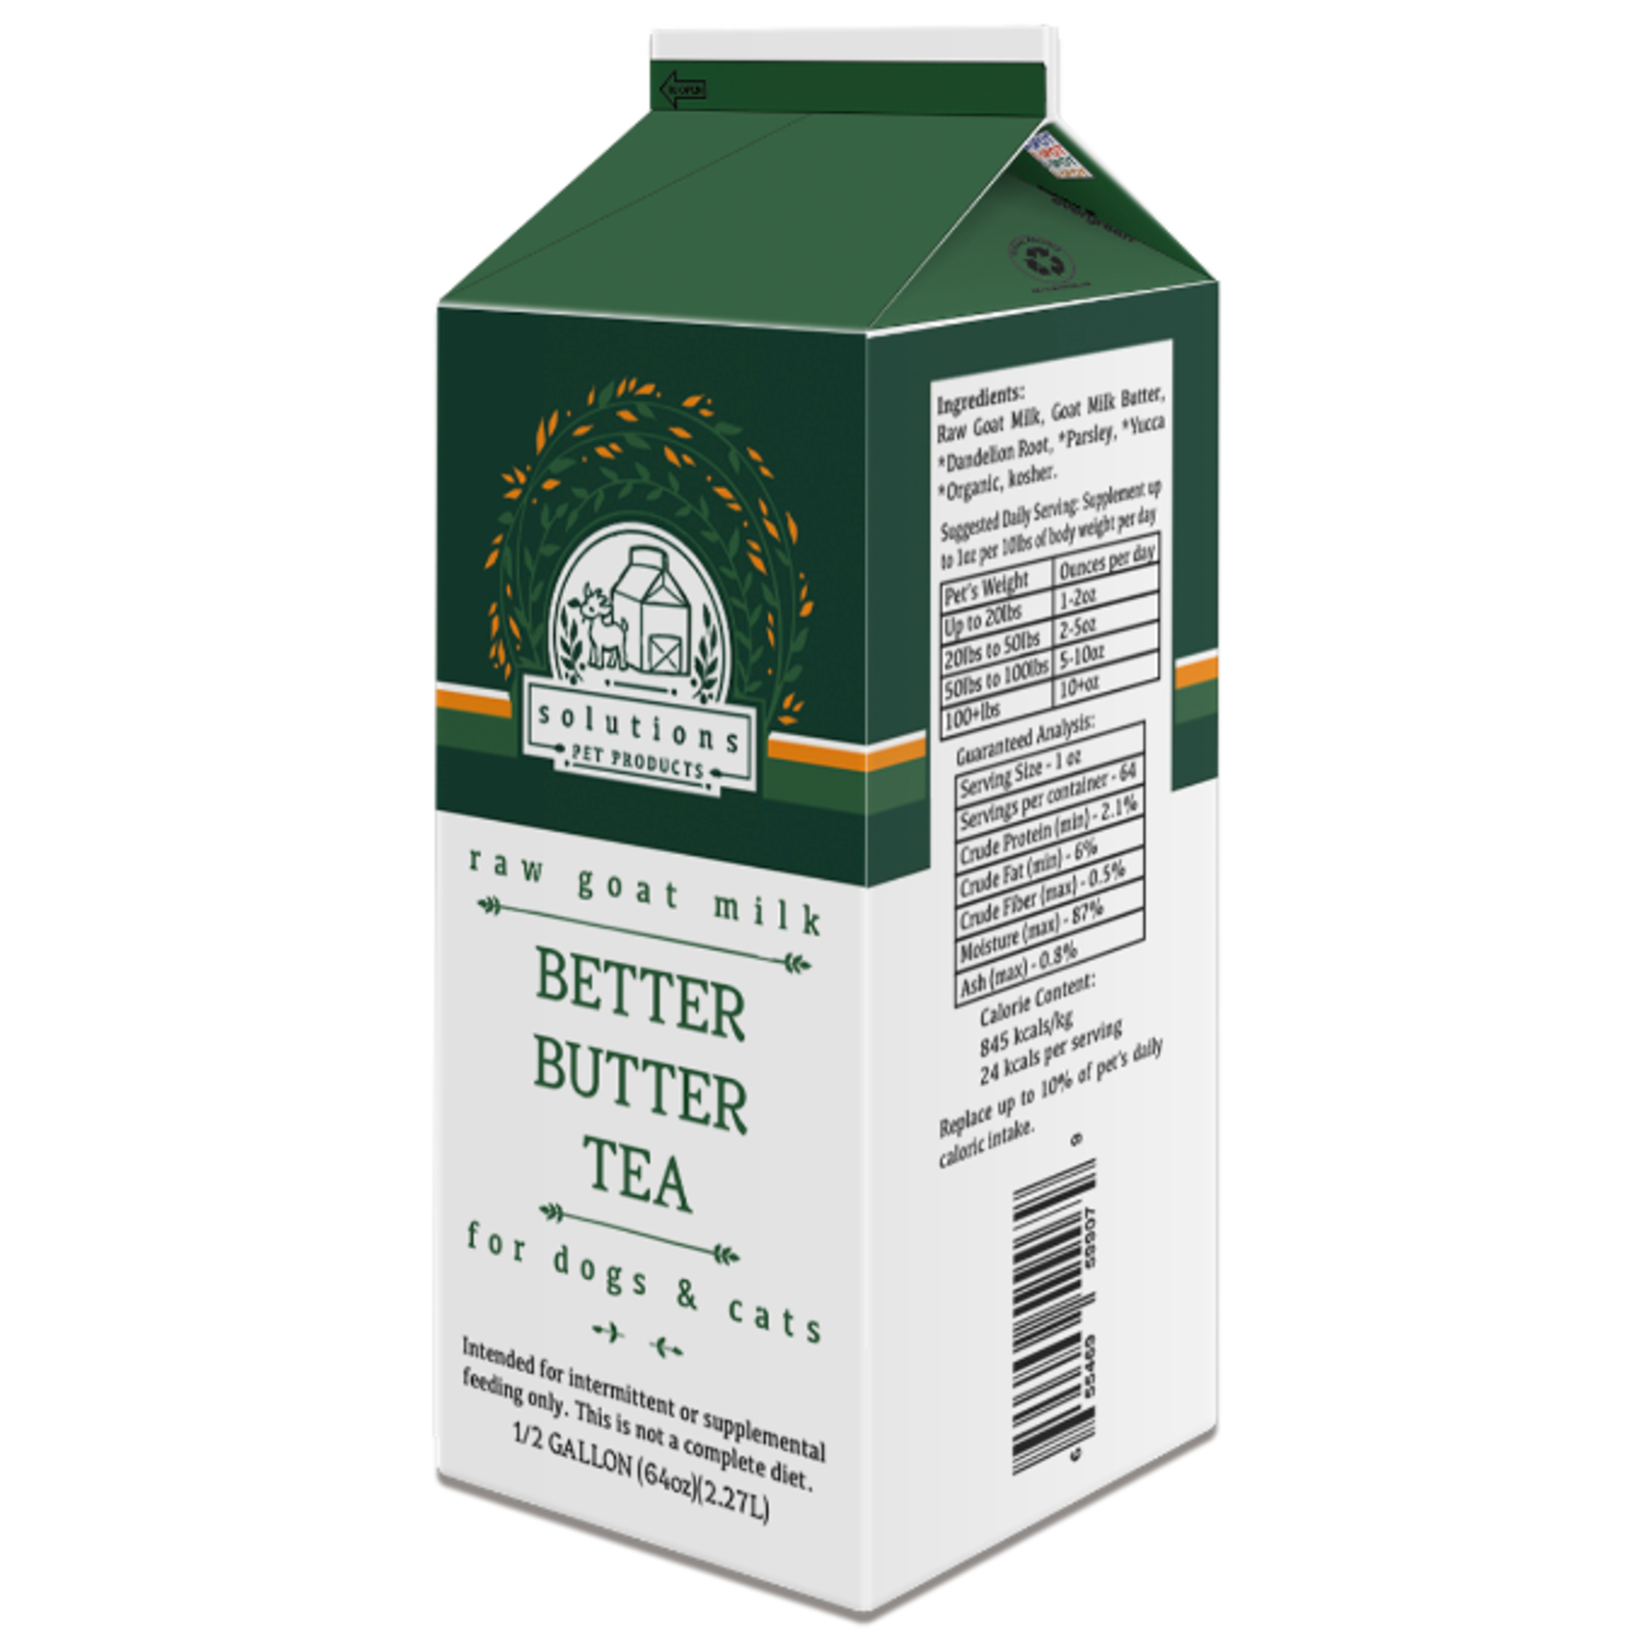 Solutions Pet Products Solutions Pet Products Raw Goat Milk - Better Butter Tea